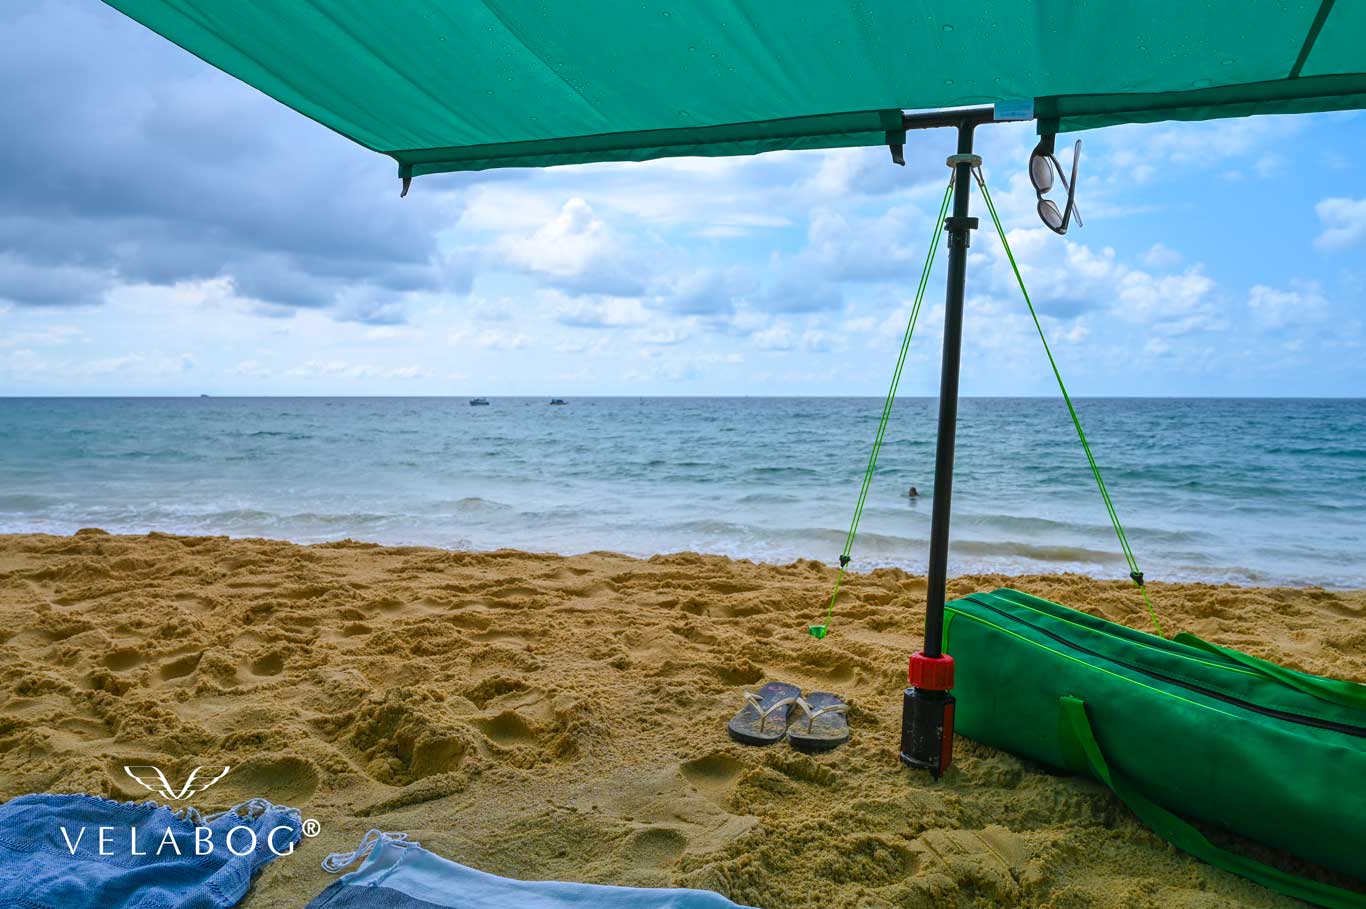 Toldo playa Velabog Breeze verde. La mejor refugio en la playa incluso en caso de chubasco corto. La mejor carpa en la playa. Opción de montaje - días sin viento, con poco viento o racheado. Vista desde abajo. Detalles.